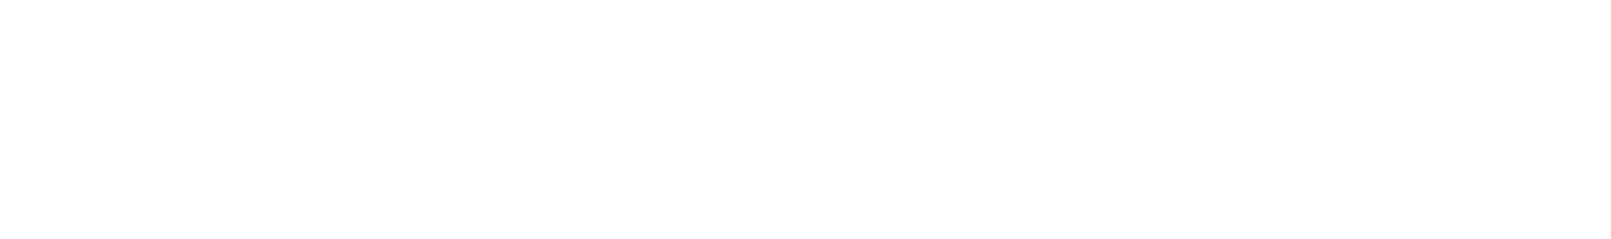 Koss logo large for dark backgrounds (transparent PNG)